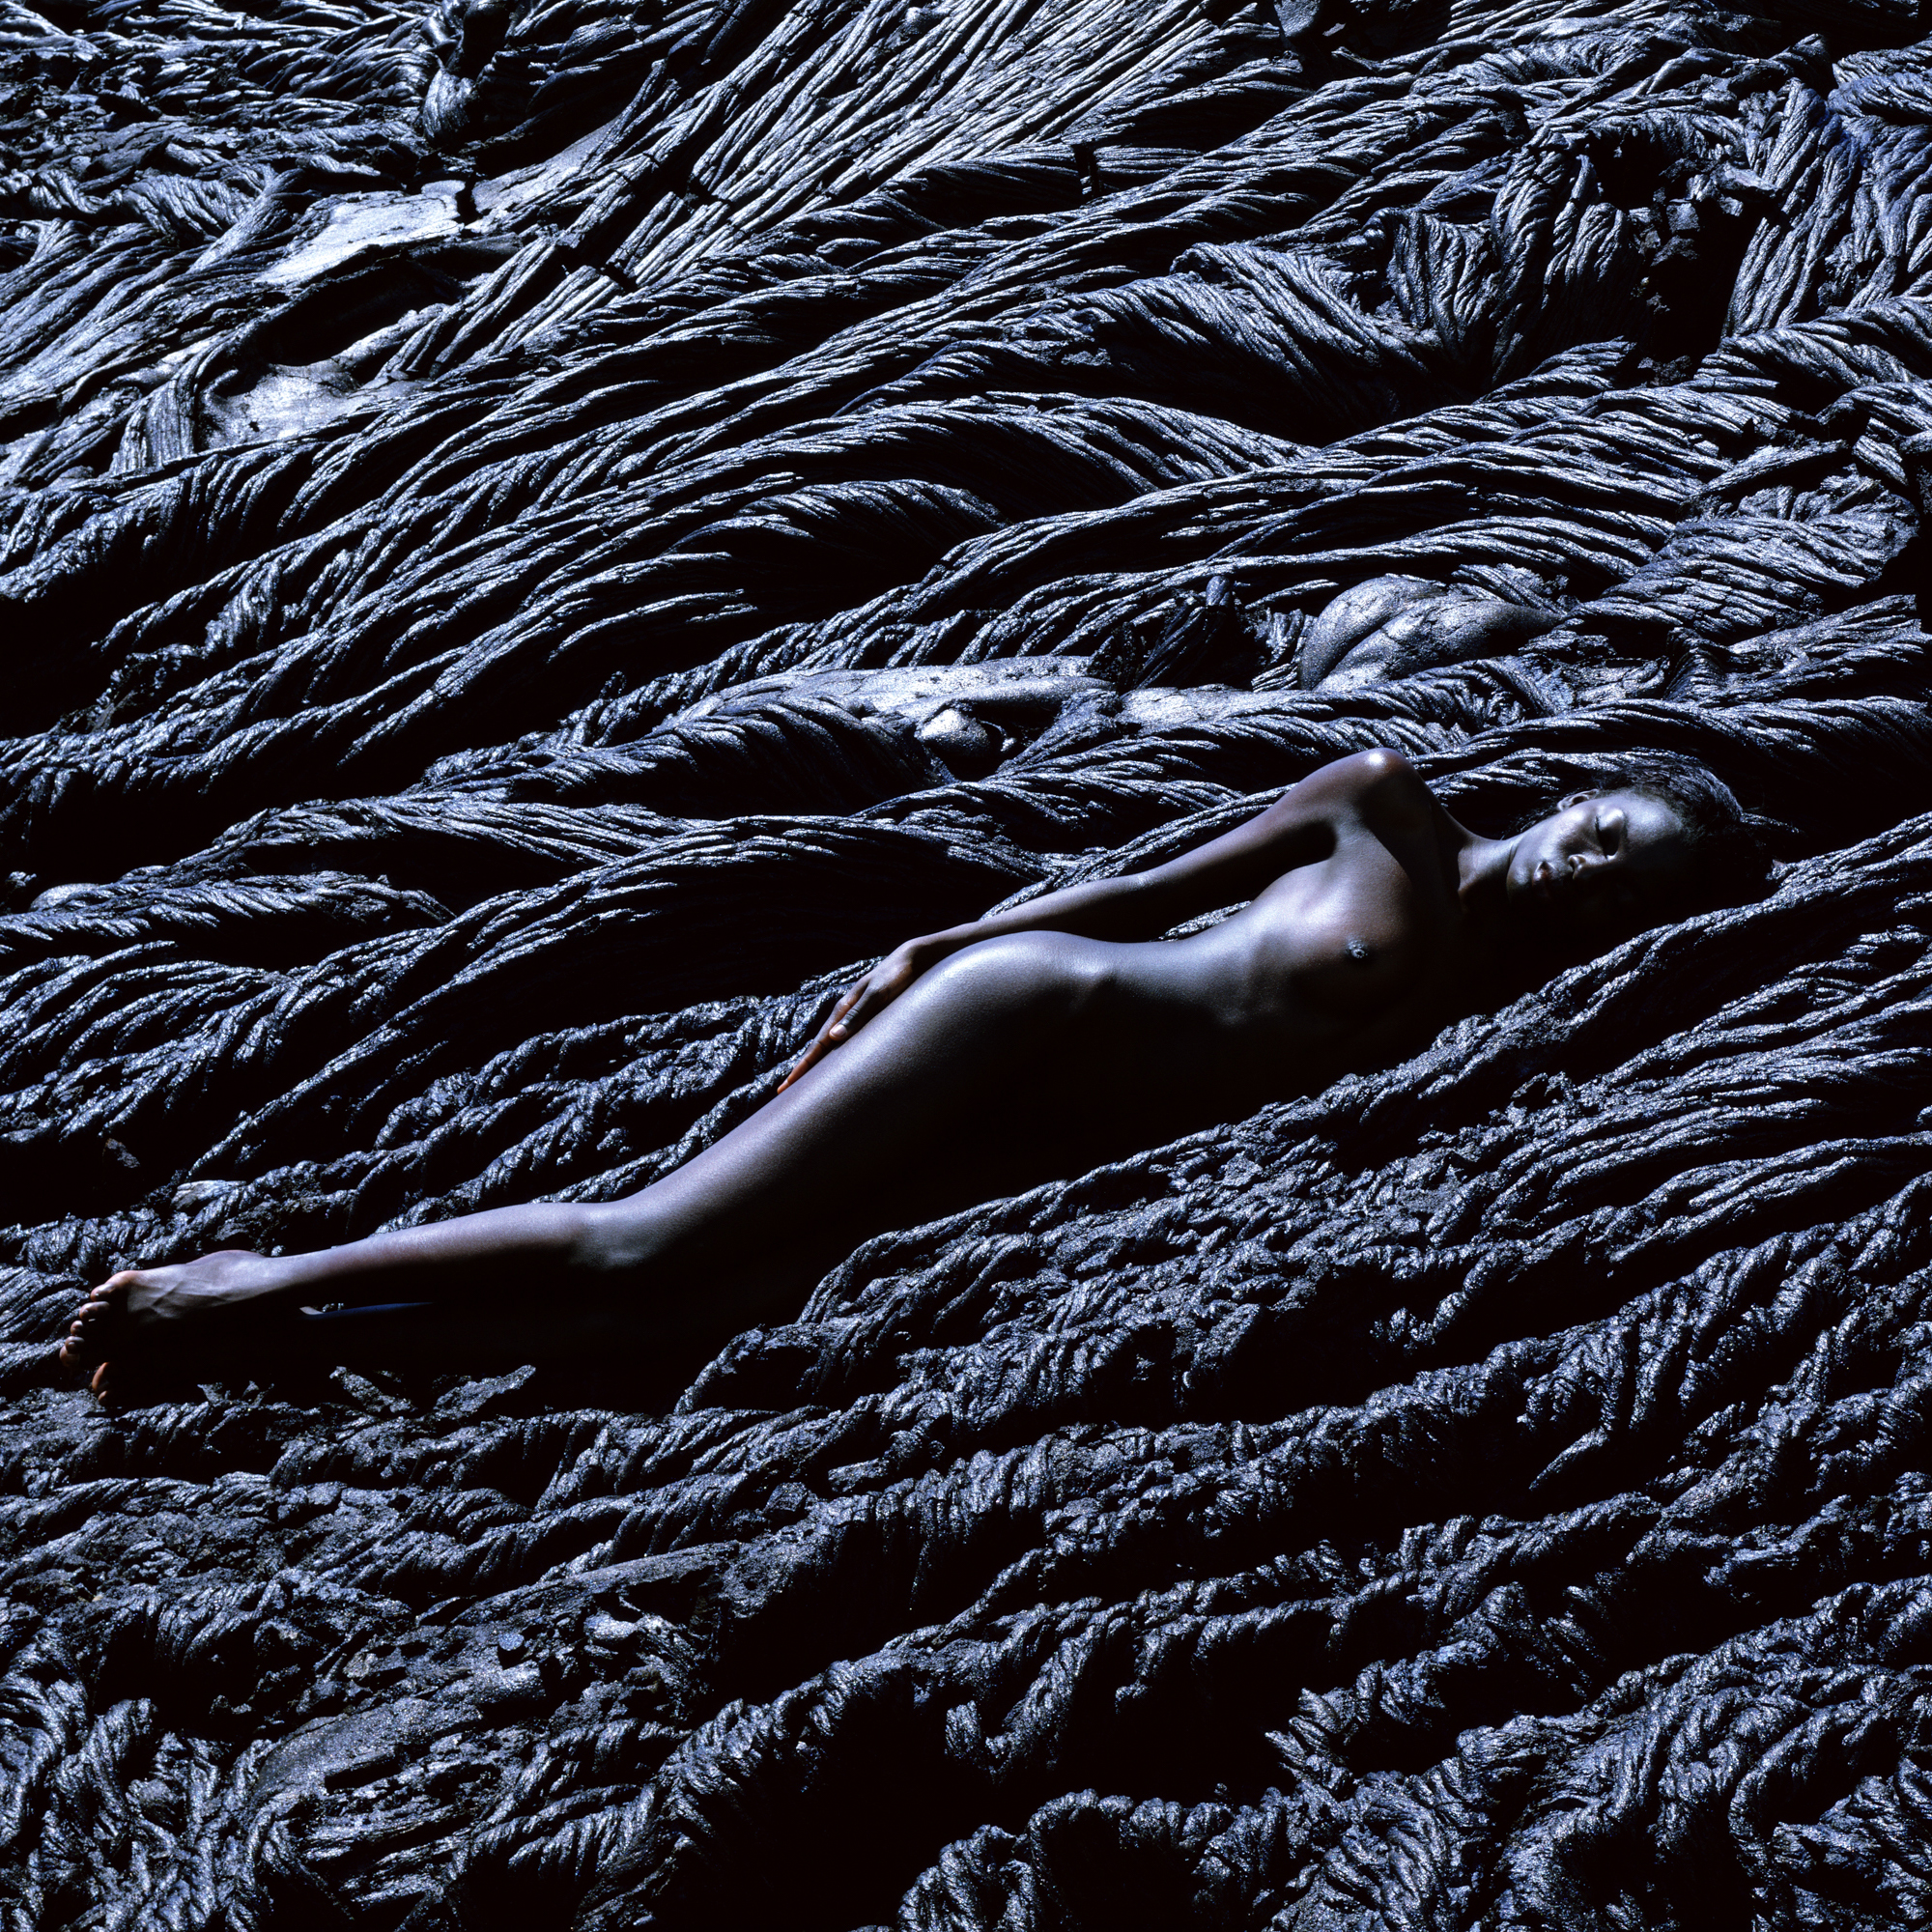 Fatou lying on lava